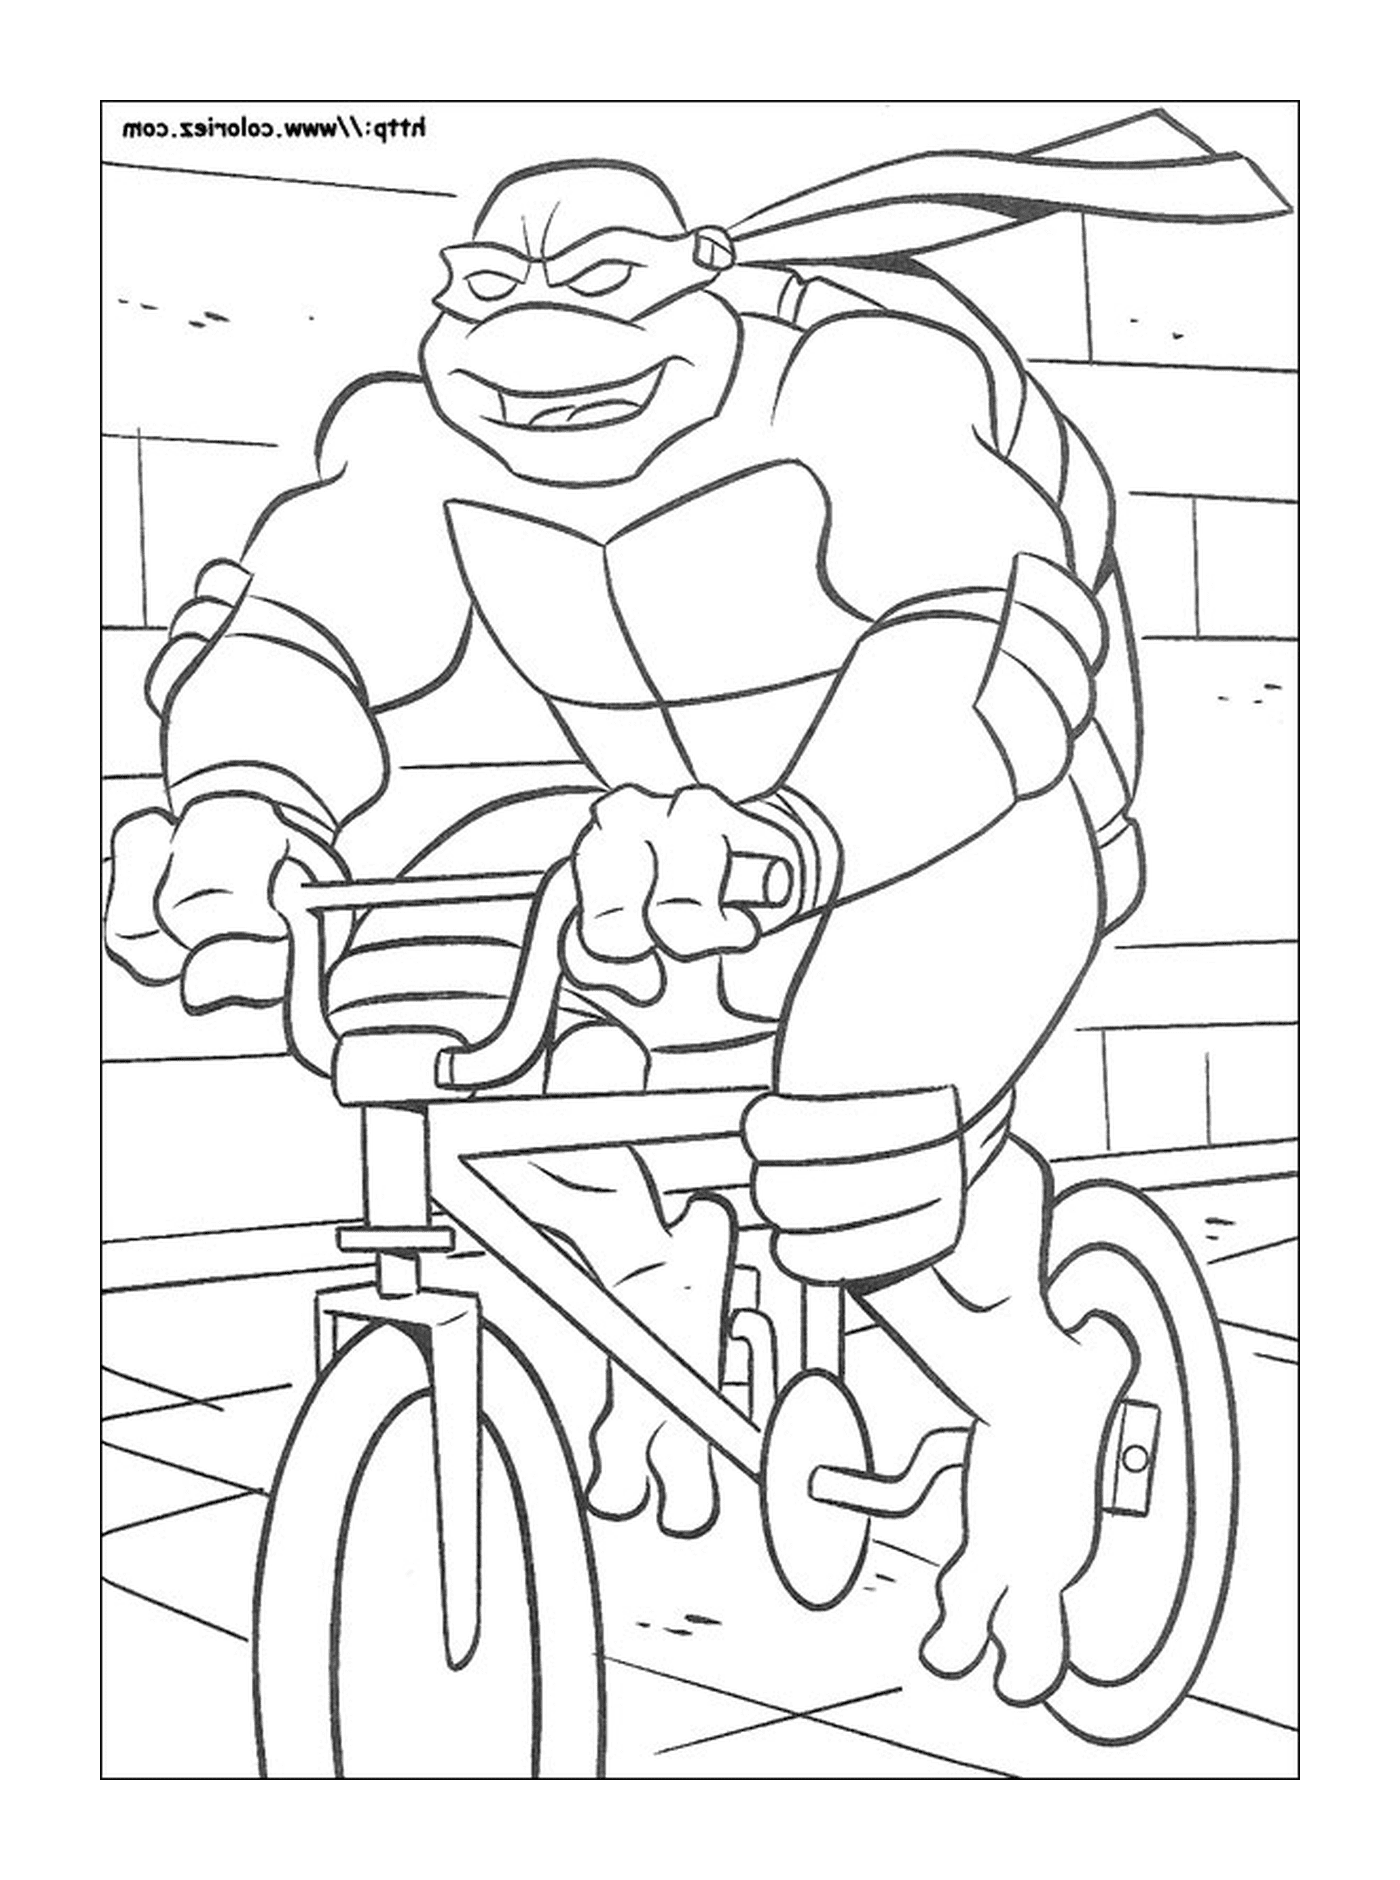  macho em uma bicicleta 